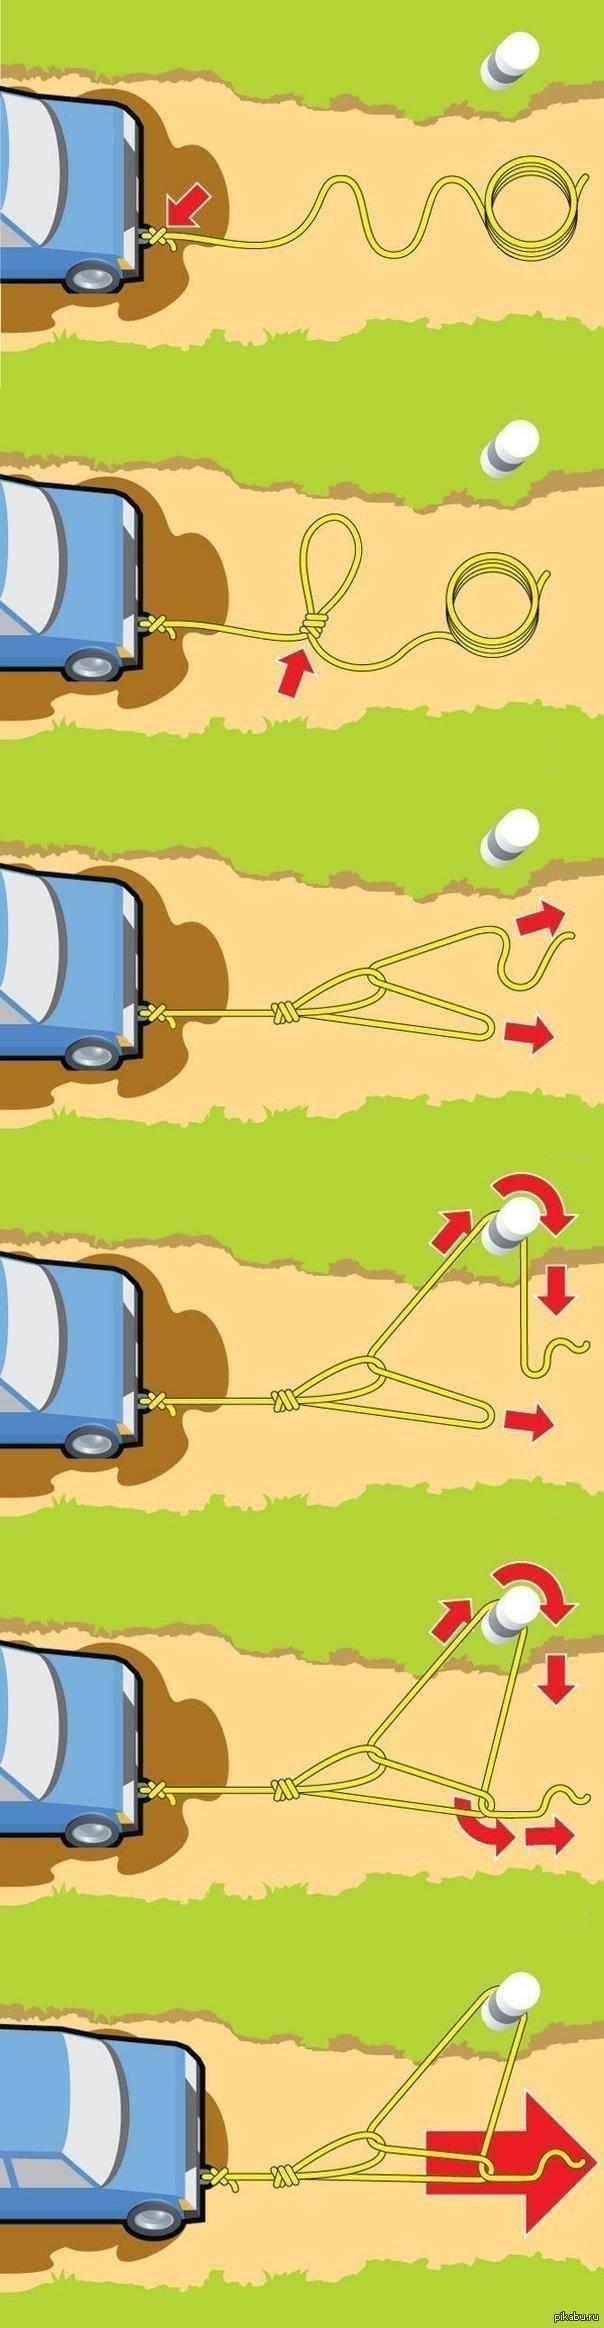 Как вытащить автомобиль из снега, грязи или песка, если он там застрял